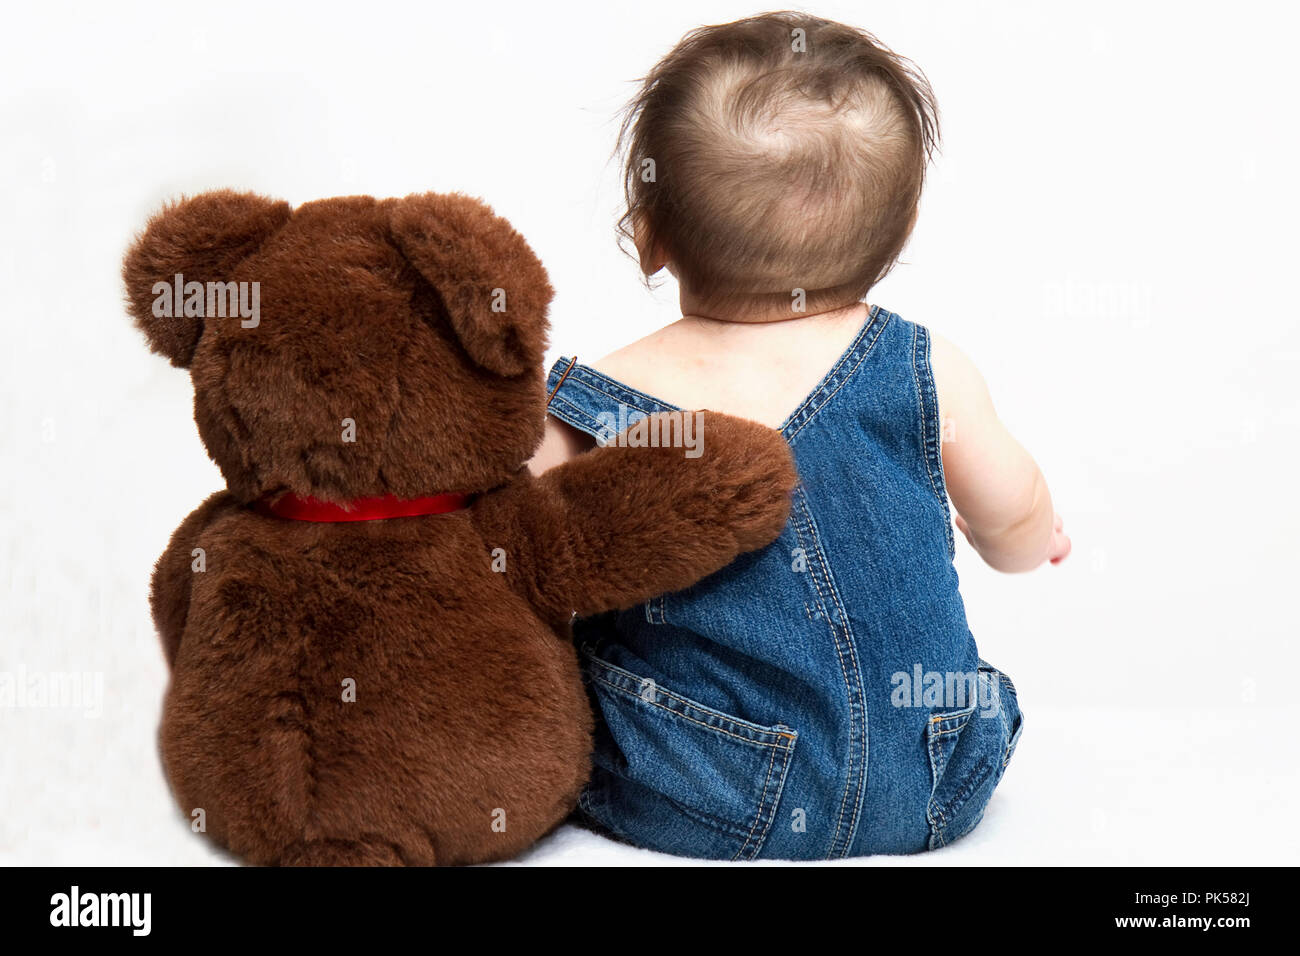 me and my teddy bear